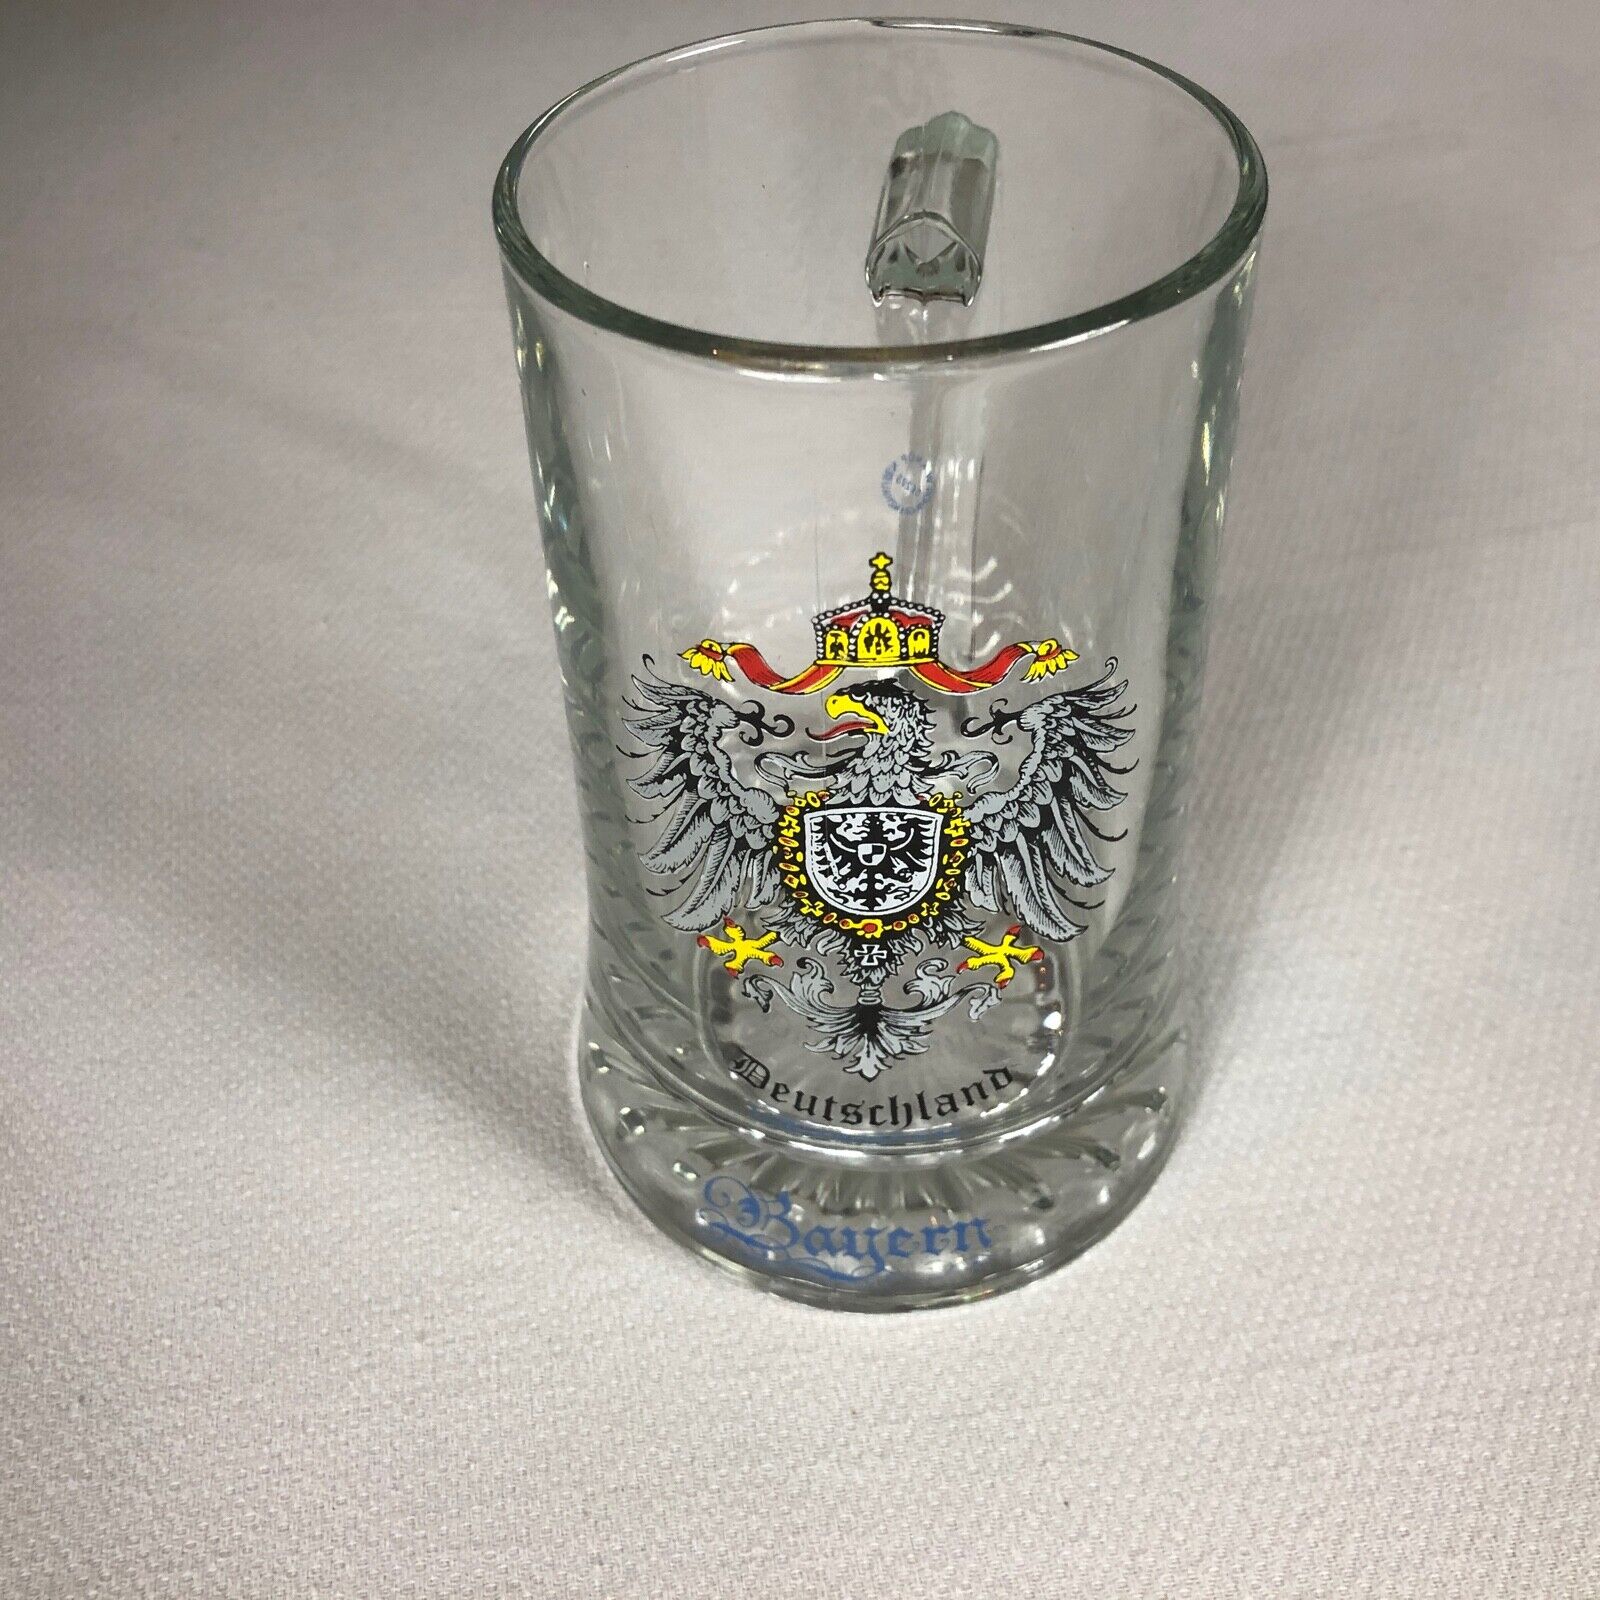 Deutschland Bayern Glass Stein Beer Mug Heavy Germany Drink Crest Seal Dad Gift